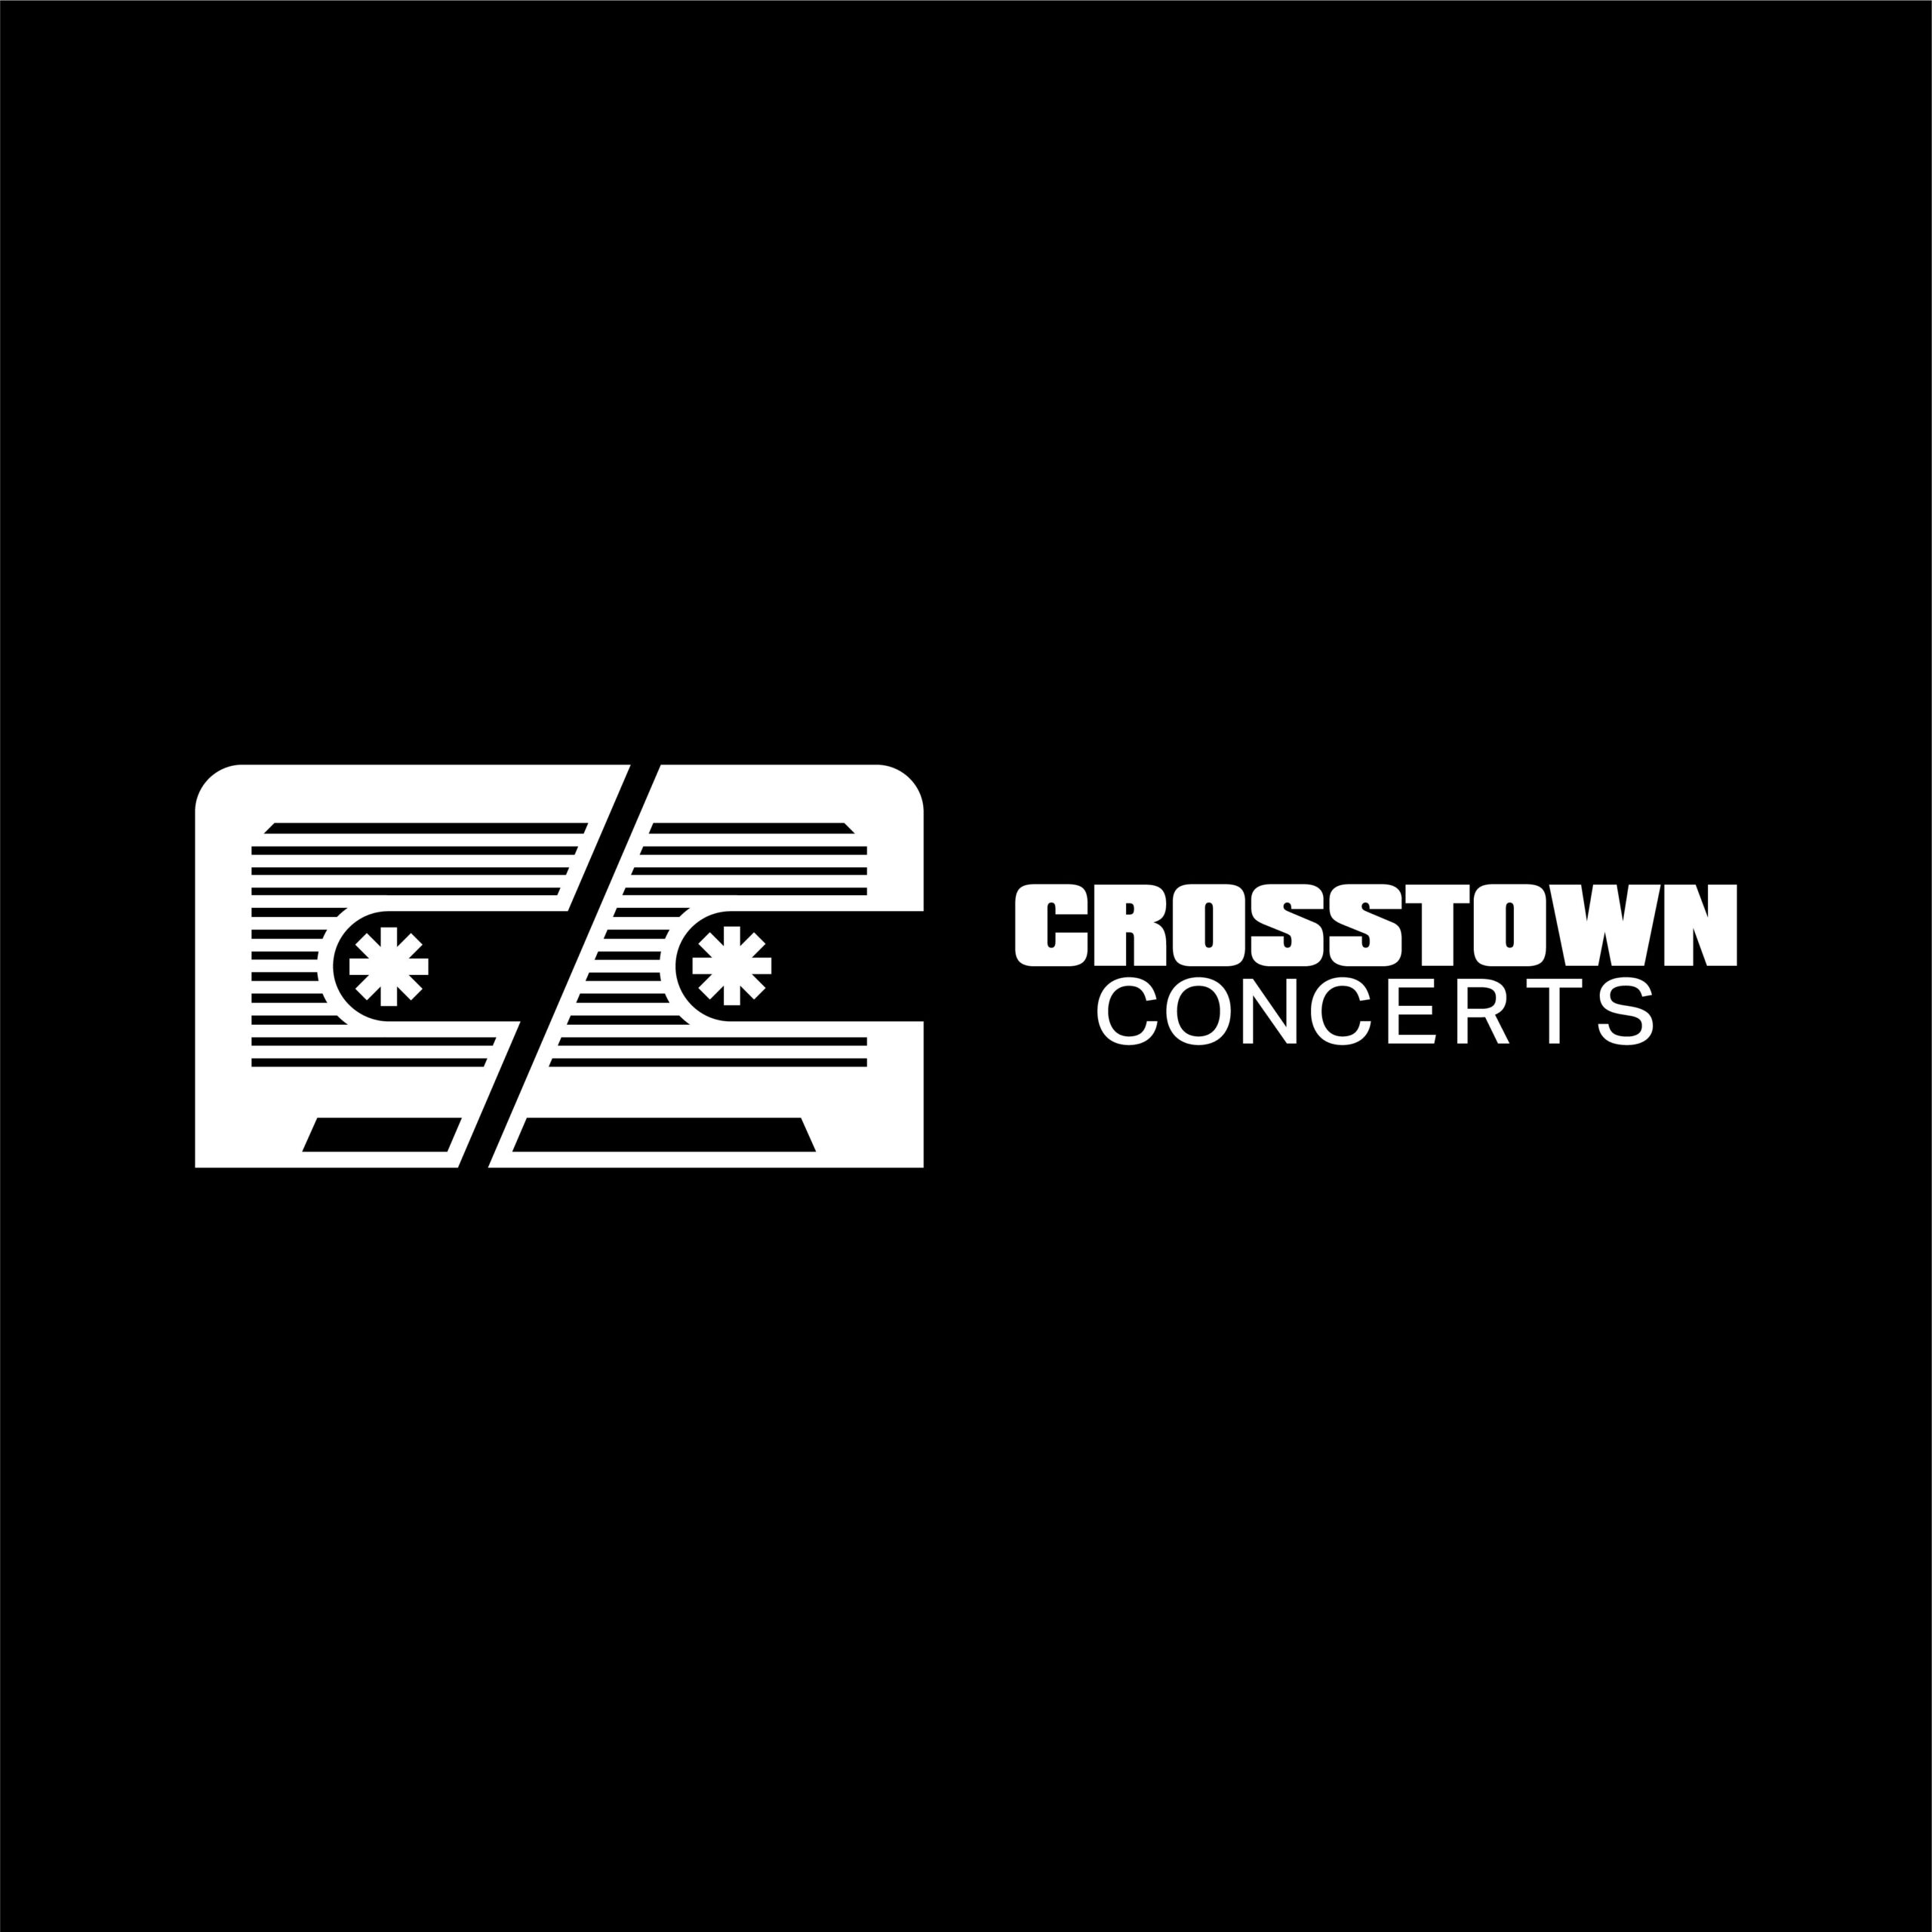 Crosstown Concerts